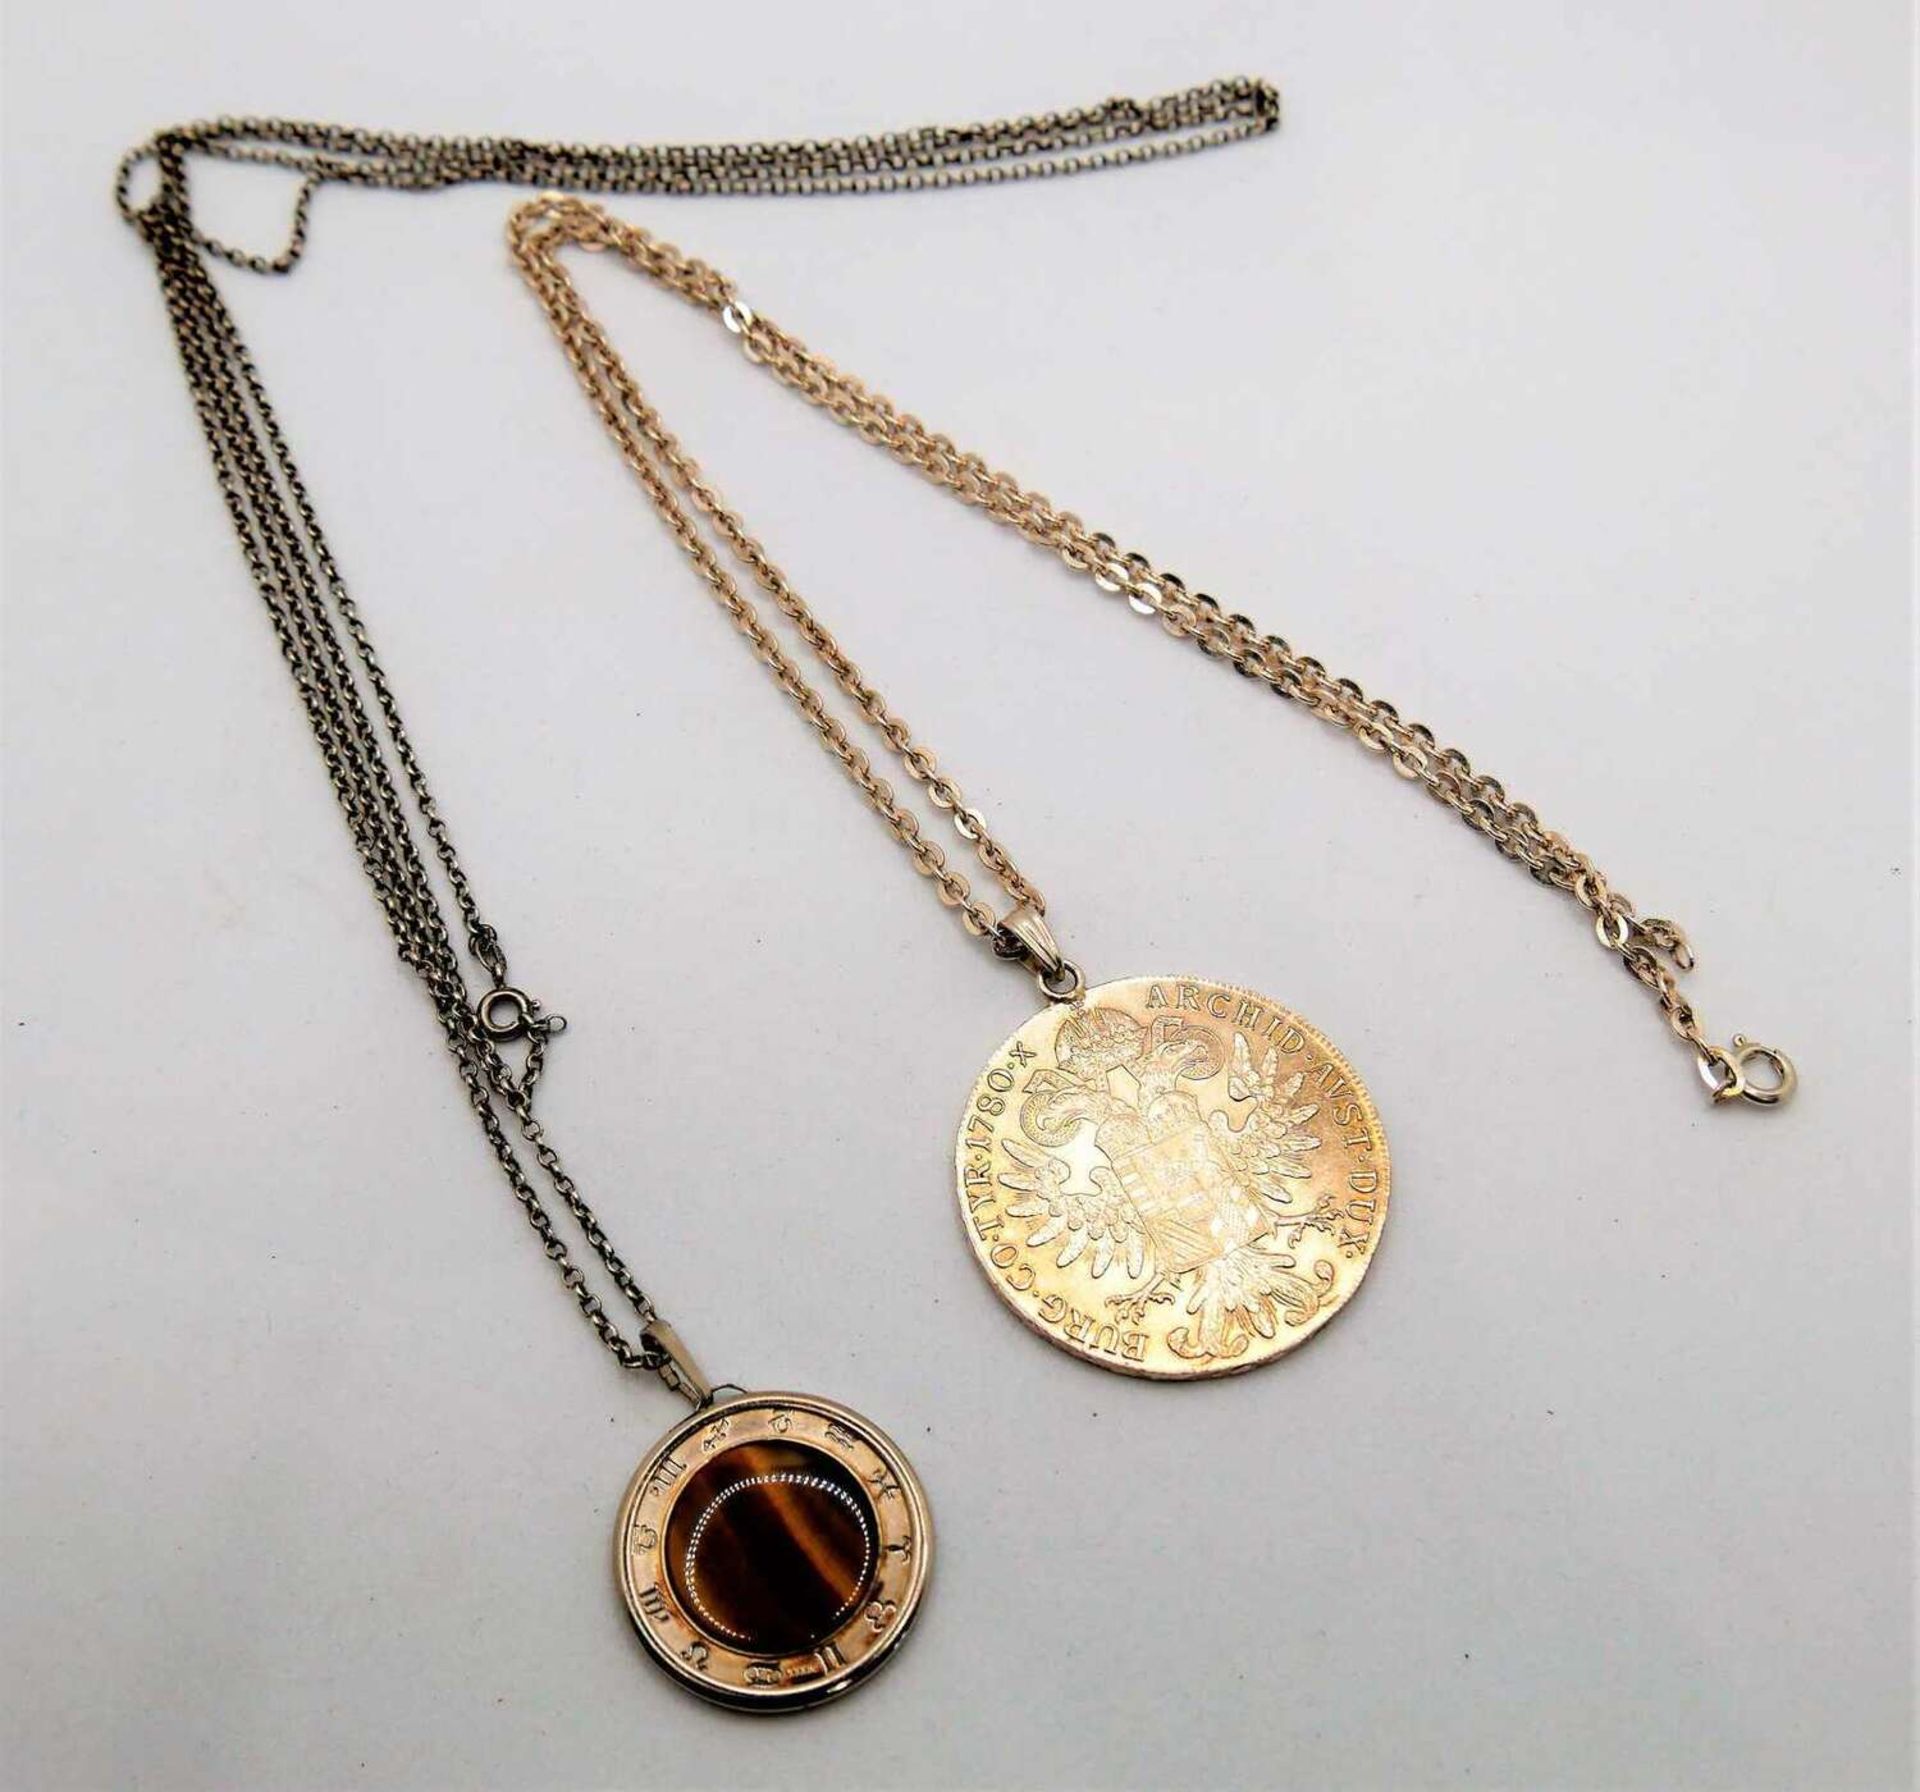 1 Maria Theresienthaler an 835er Silberkette, sowie 1 Medaille "Gemini" mit Tigerauge an 835er